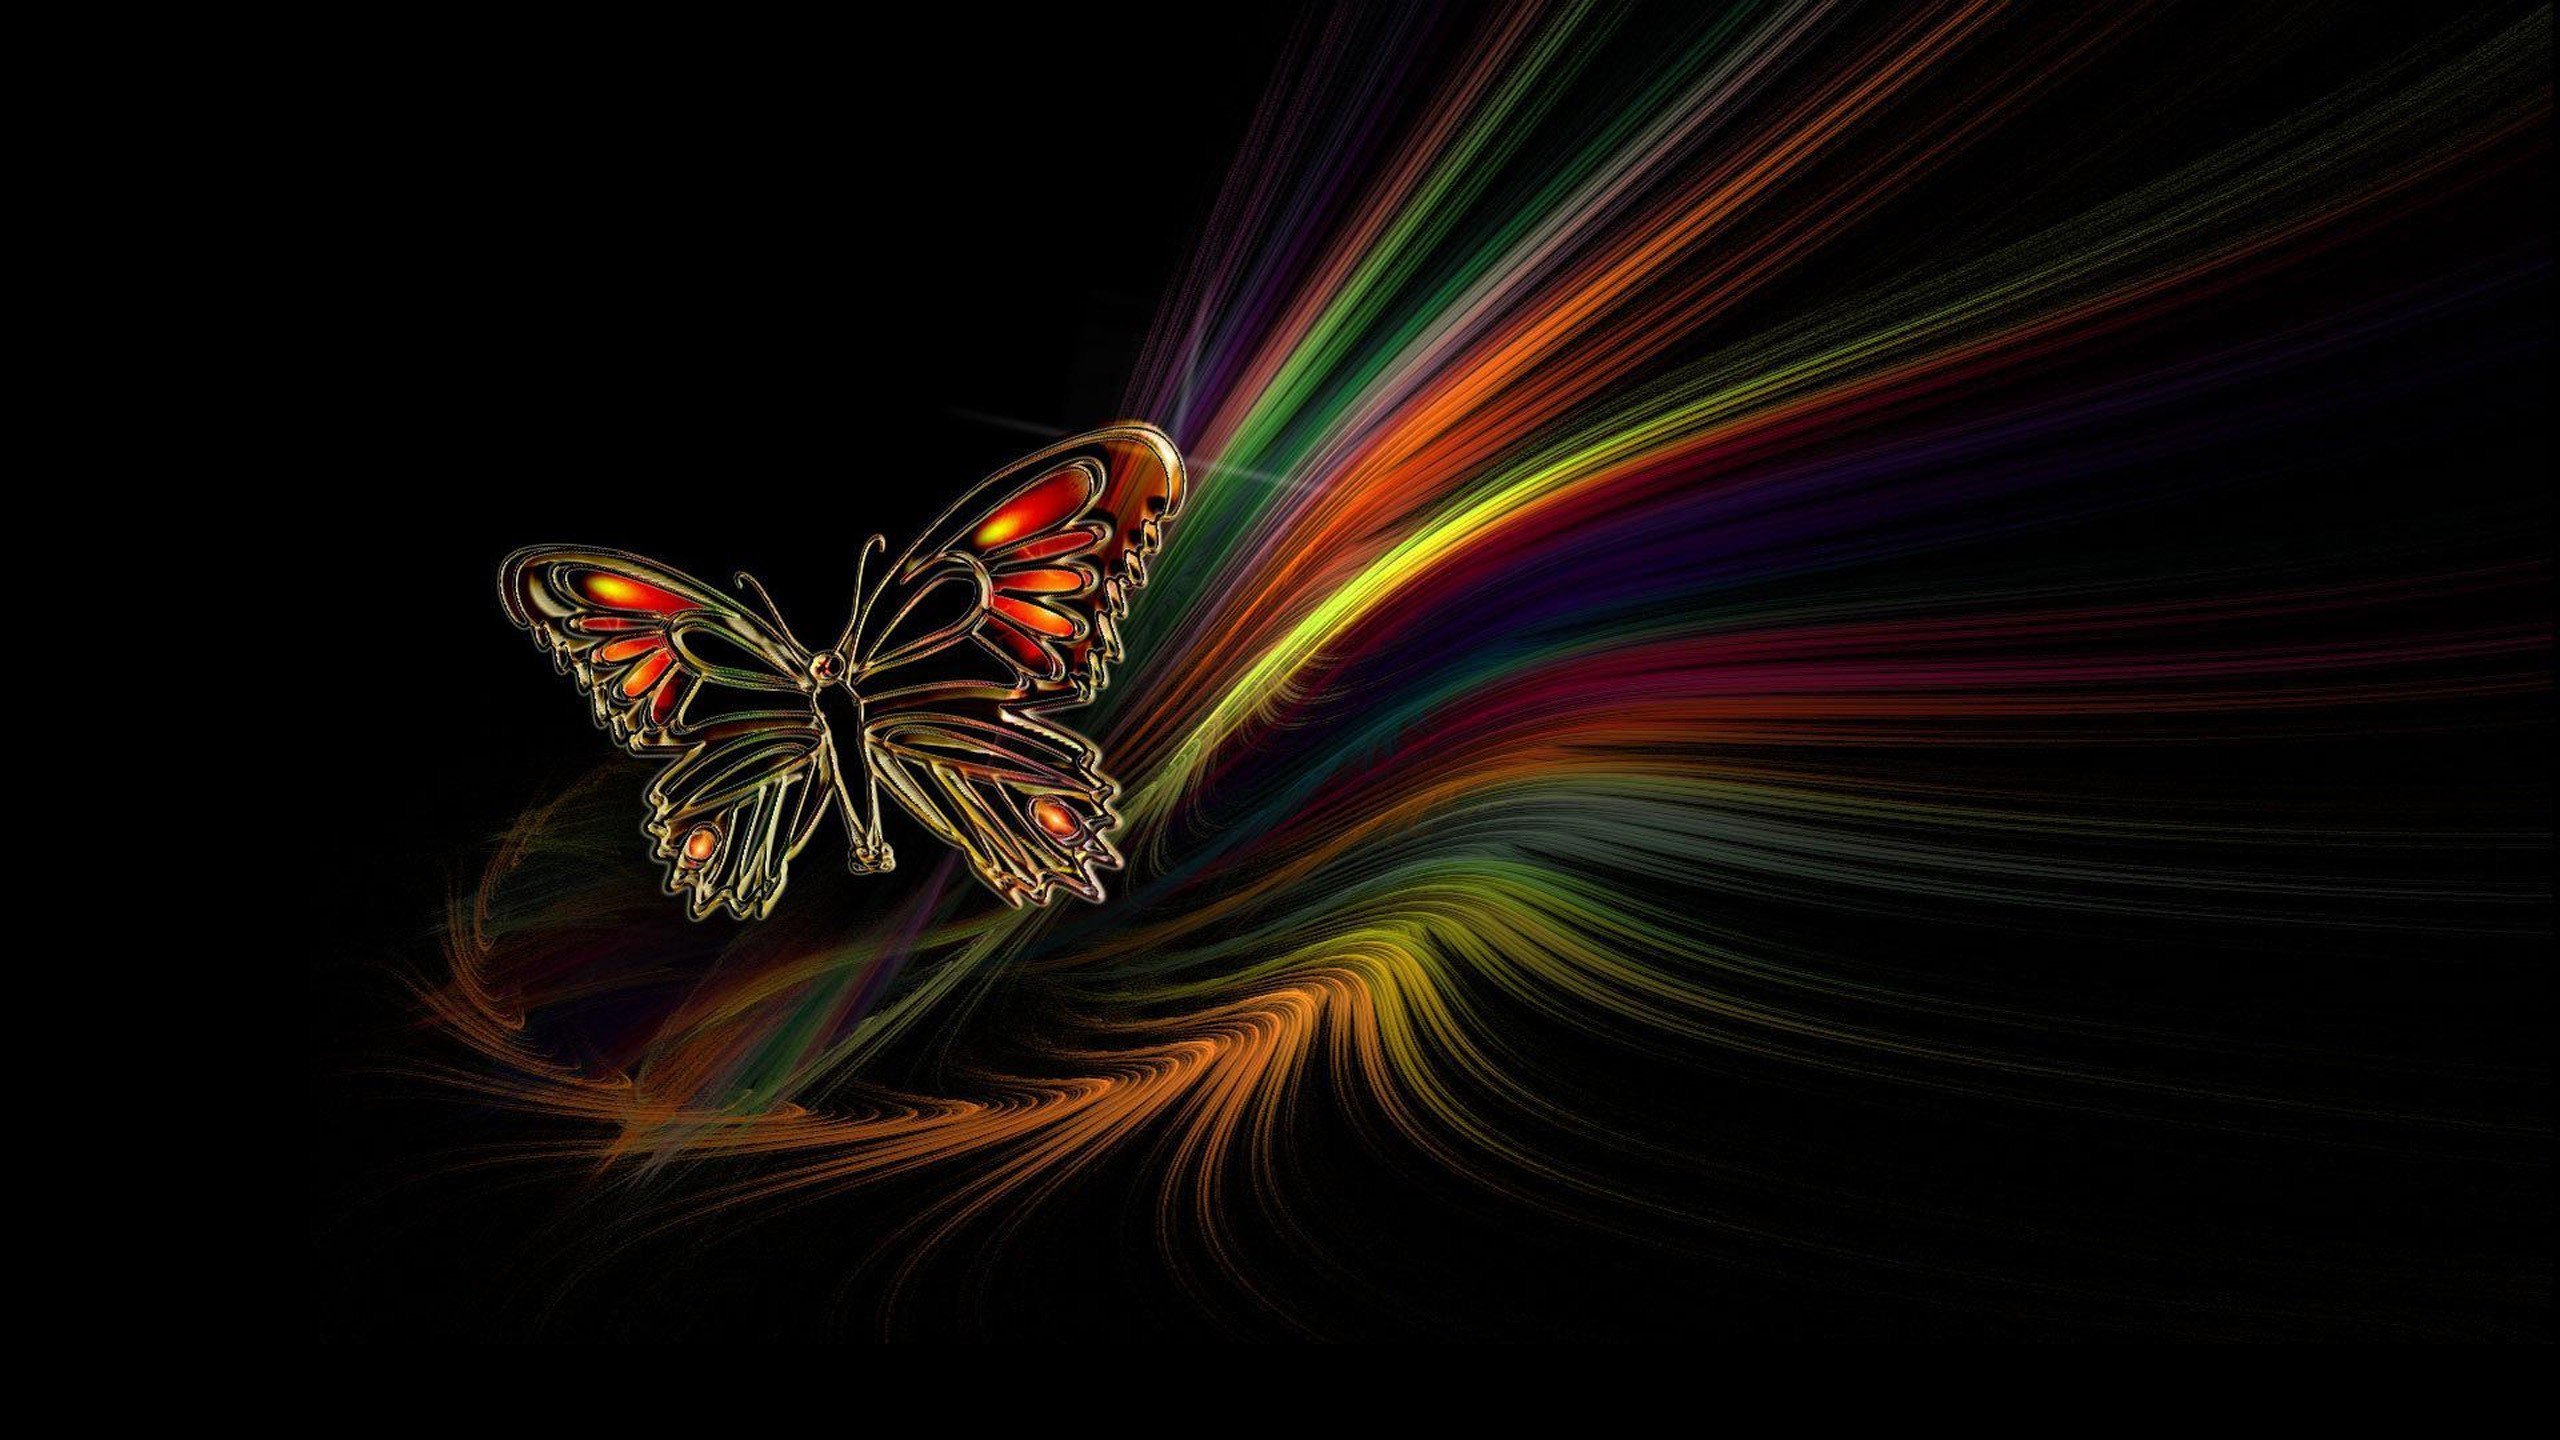 Обои красивые на телефон весь экран необычные. Бабочка на темном фоне. Бабочка яркая на черном фоне. Яркие бабочки. Радужная бабочка.